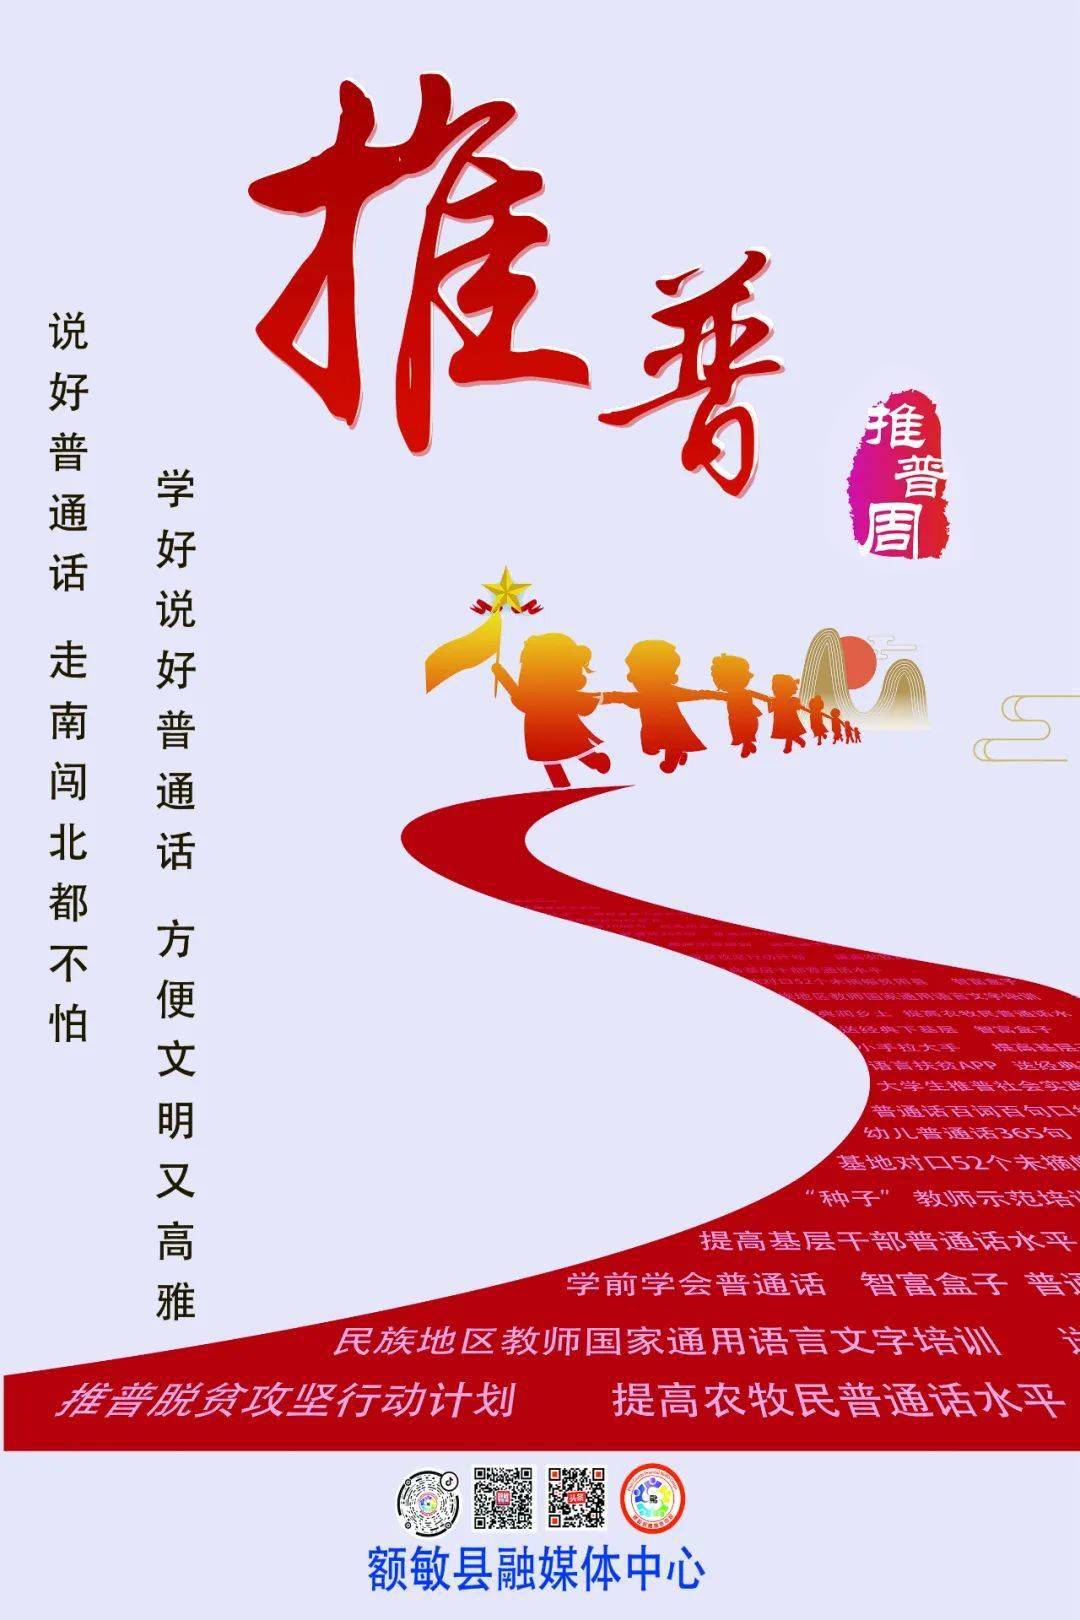 推普第24届全国推广普通话宣传周宣传海报